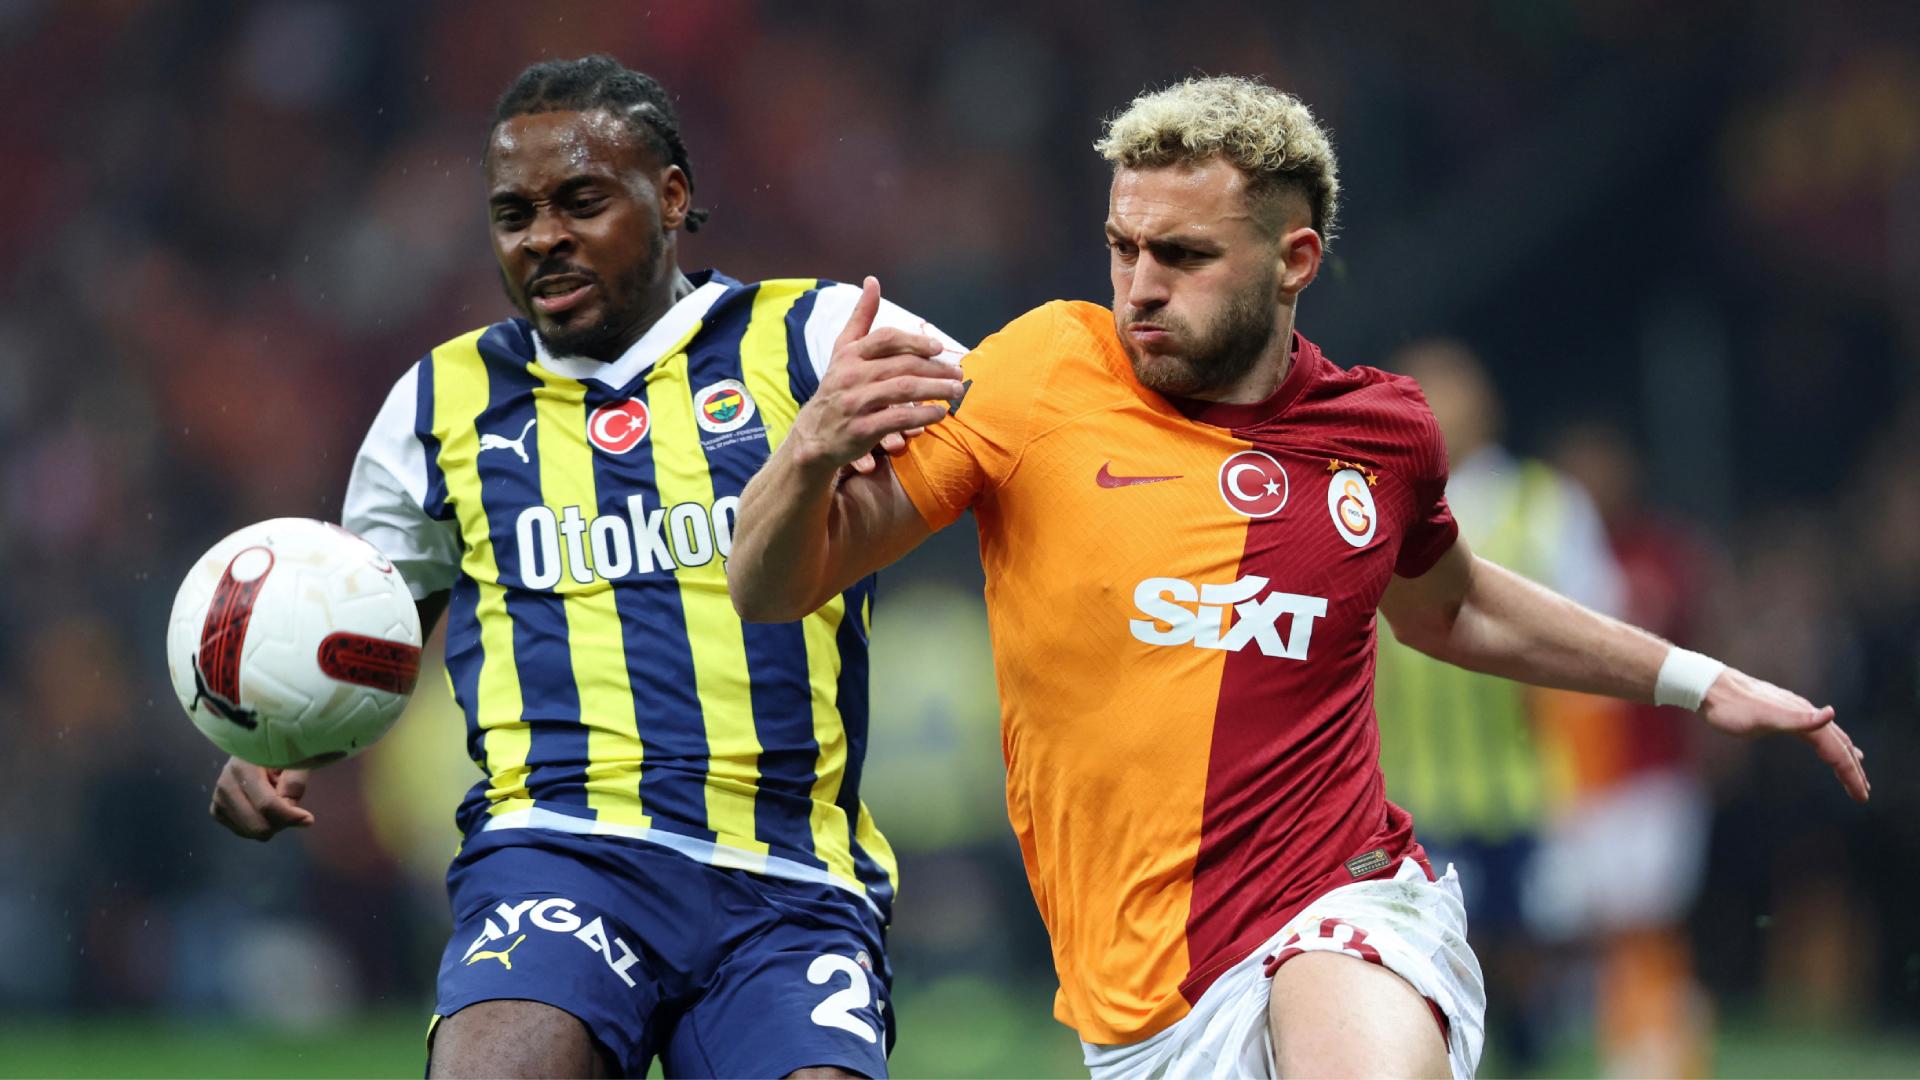 VIDEO | SüperLig Highlights: Galatasaray vs Fenerbahce